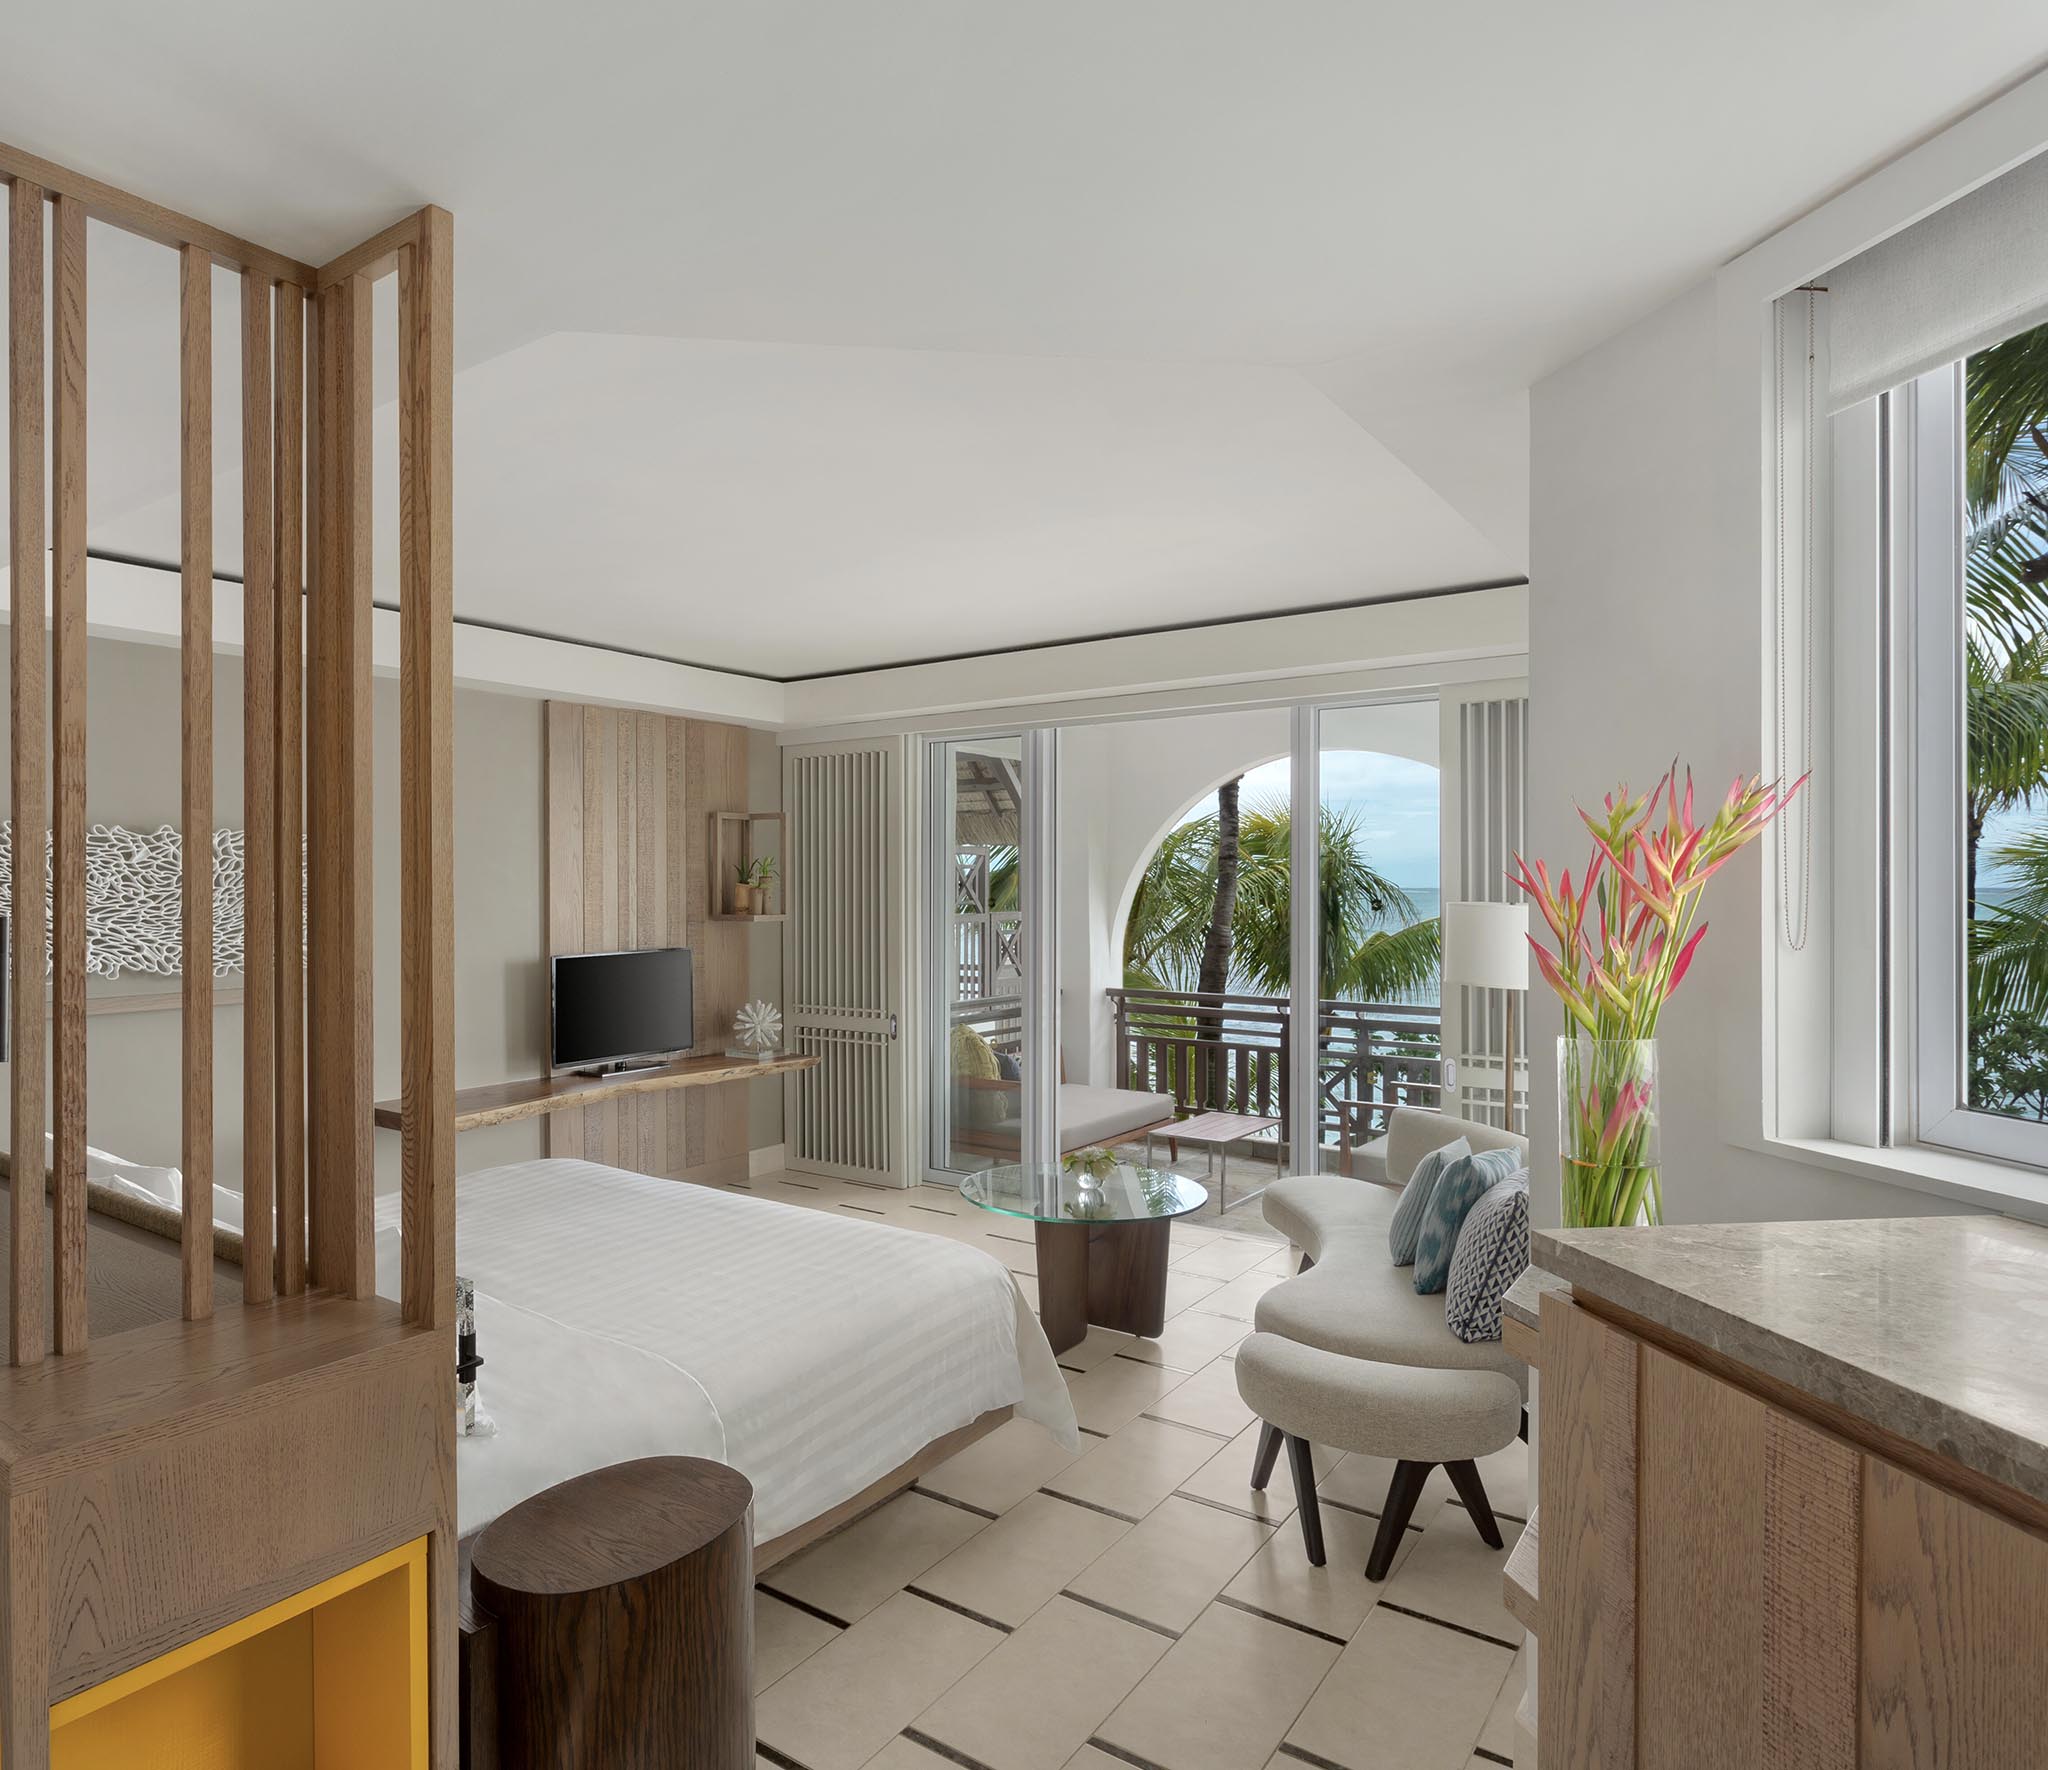 Shangri-La-Mauritius_0003_Junior Suite Frangipani Club_Ocean View King_Bedroom_2